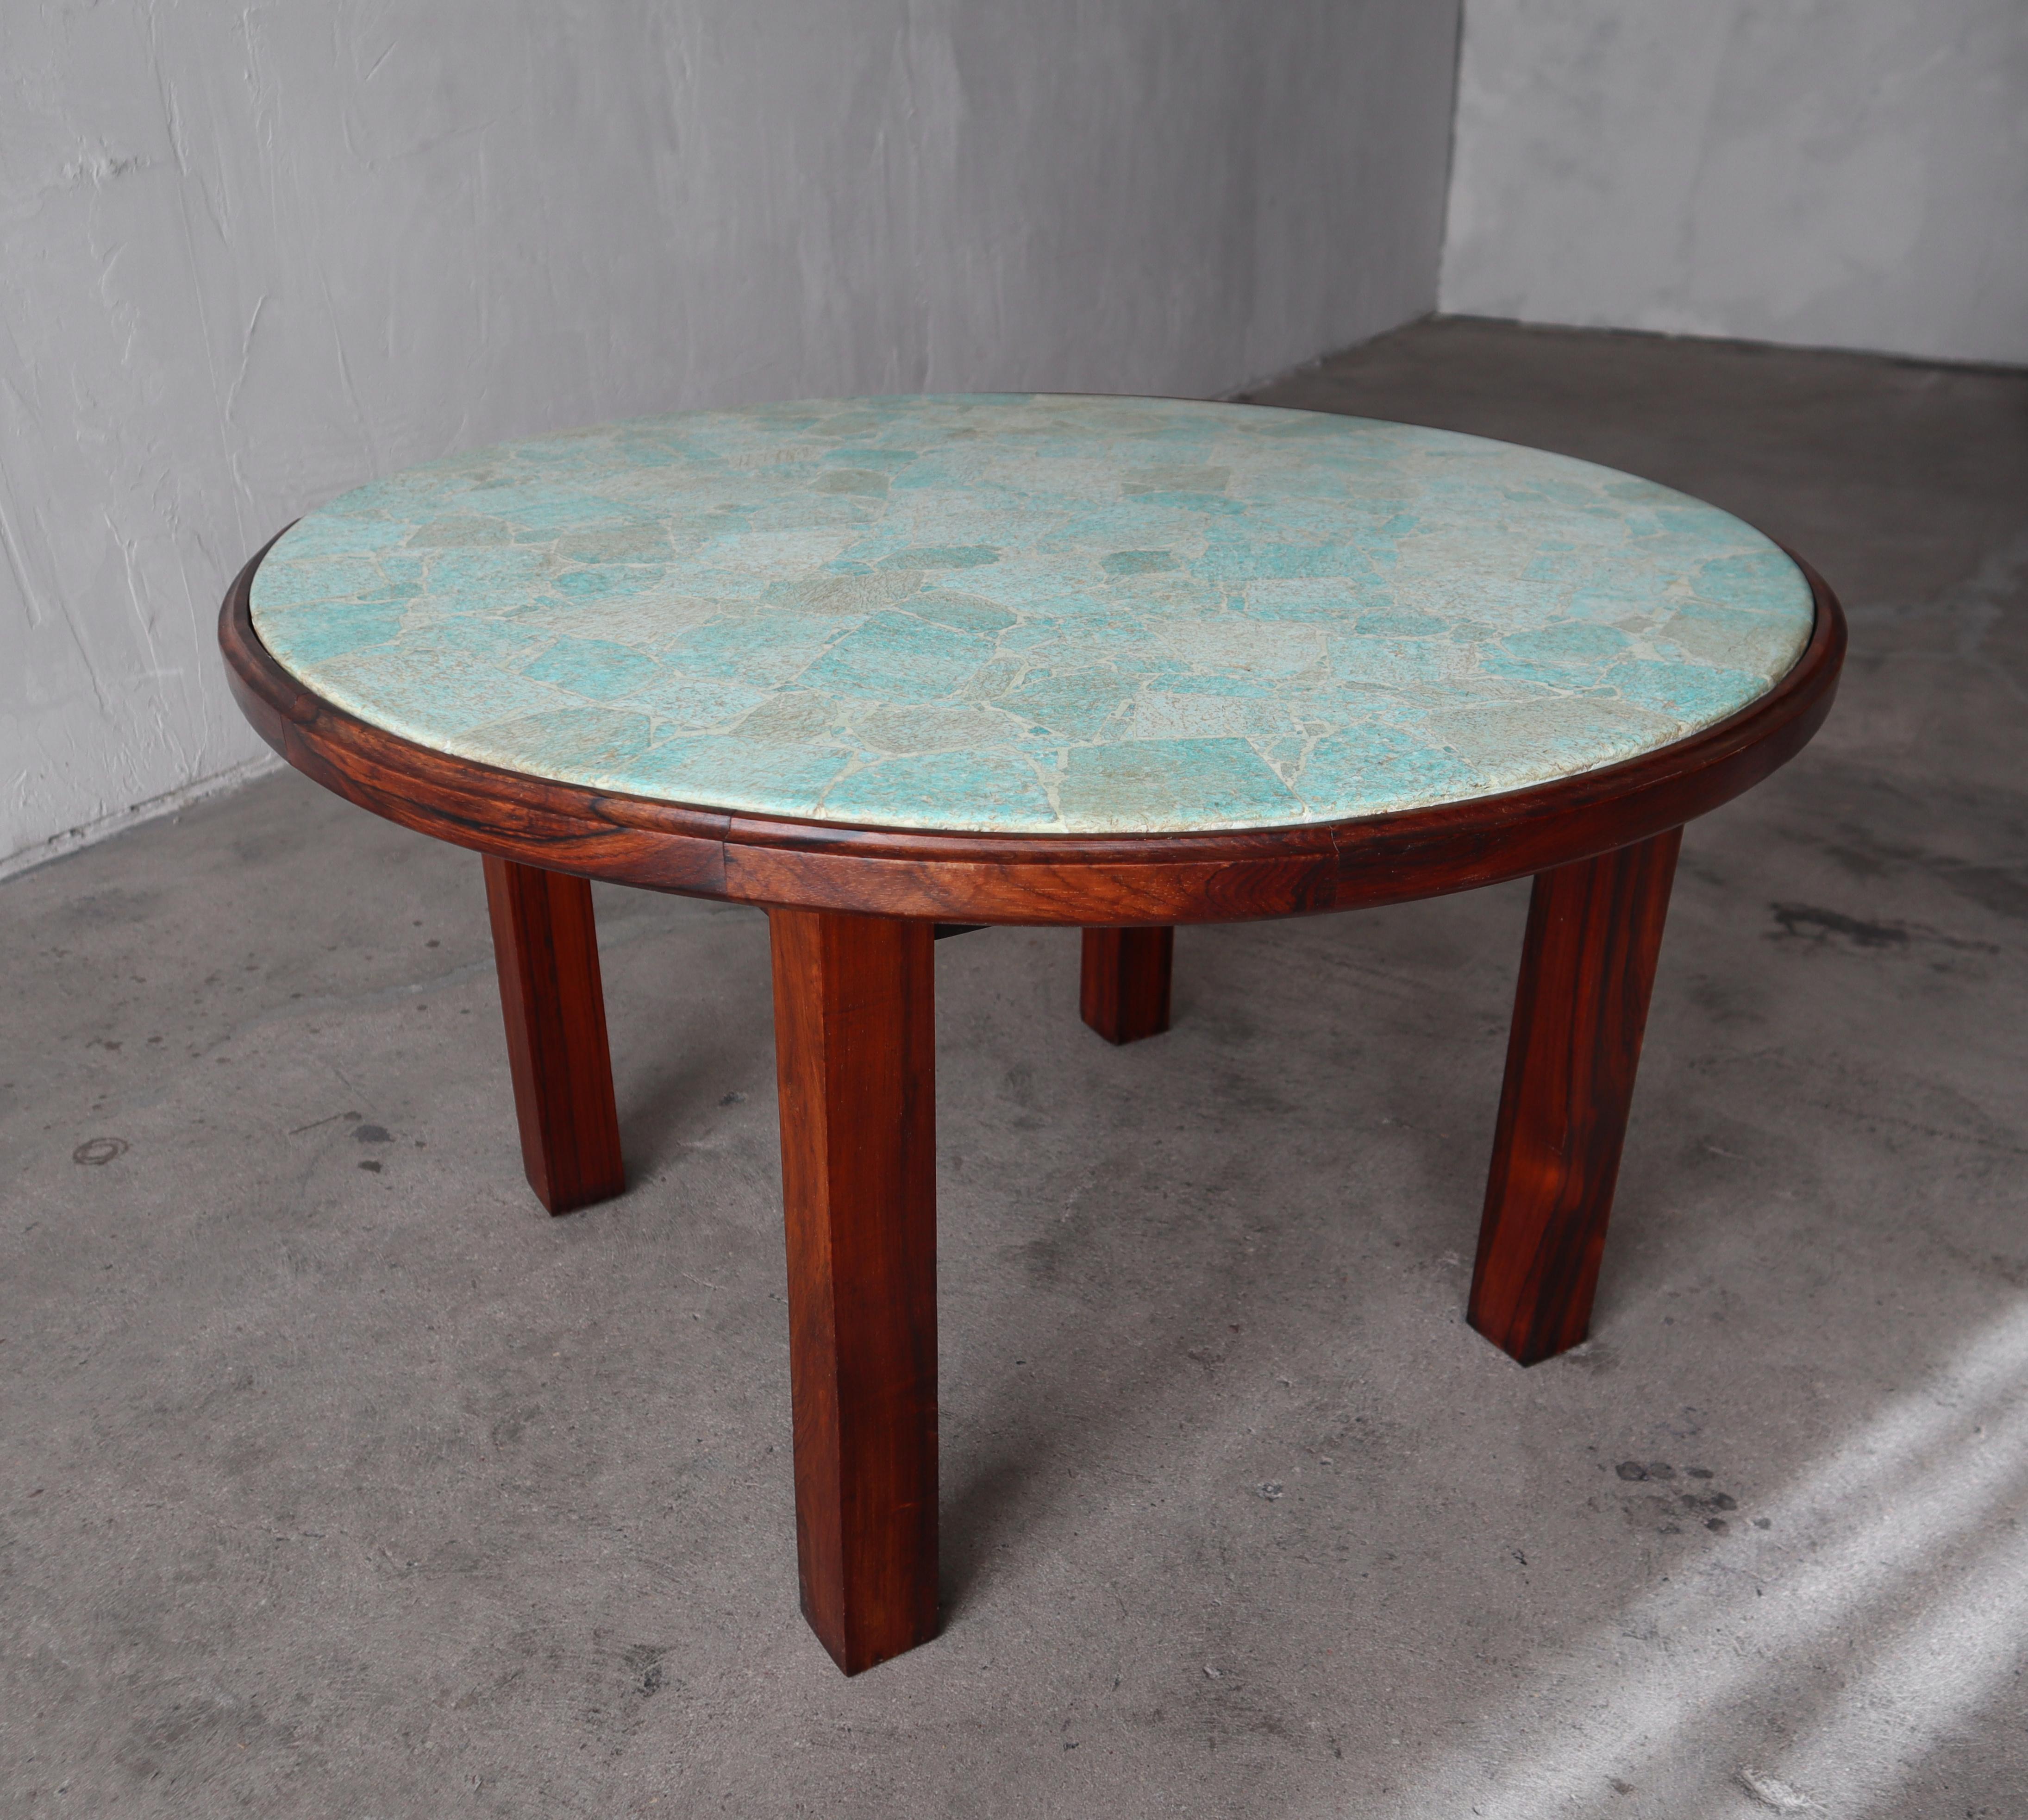 Wir haben diesen unglaublichen Tisch von seinem ursprünglichen Besitzer erworben, der ihn in den 1960er Jahren in Rio de Janeiro, Brasilien, anfertigen ließ. Der Tisch ist aus massivem brasilianischem Palisanderholz gefertigt und mit wunderschönen,